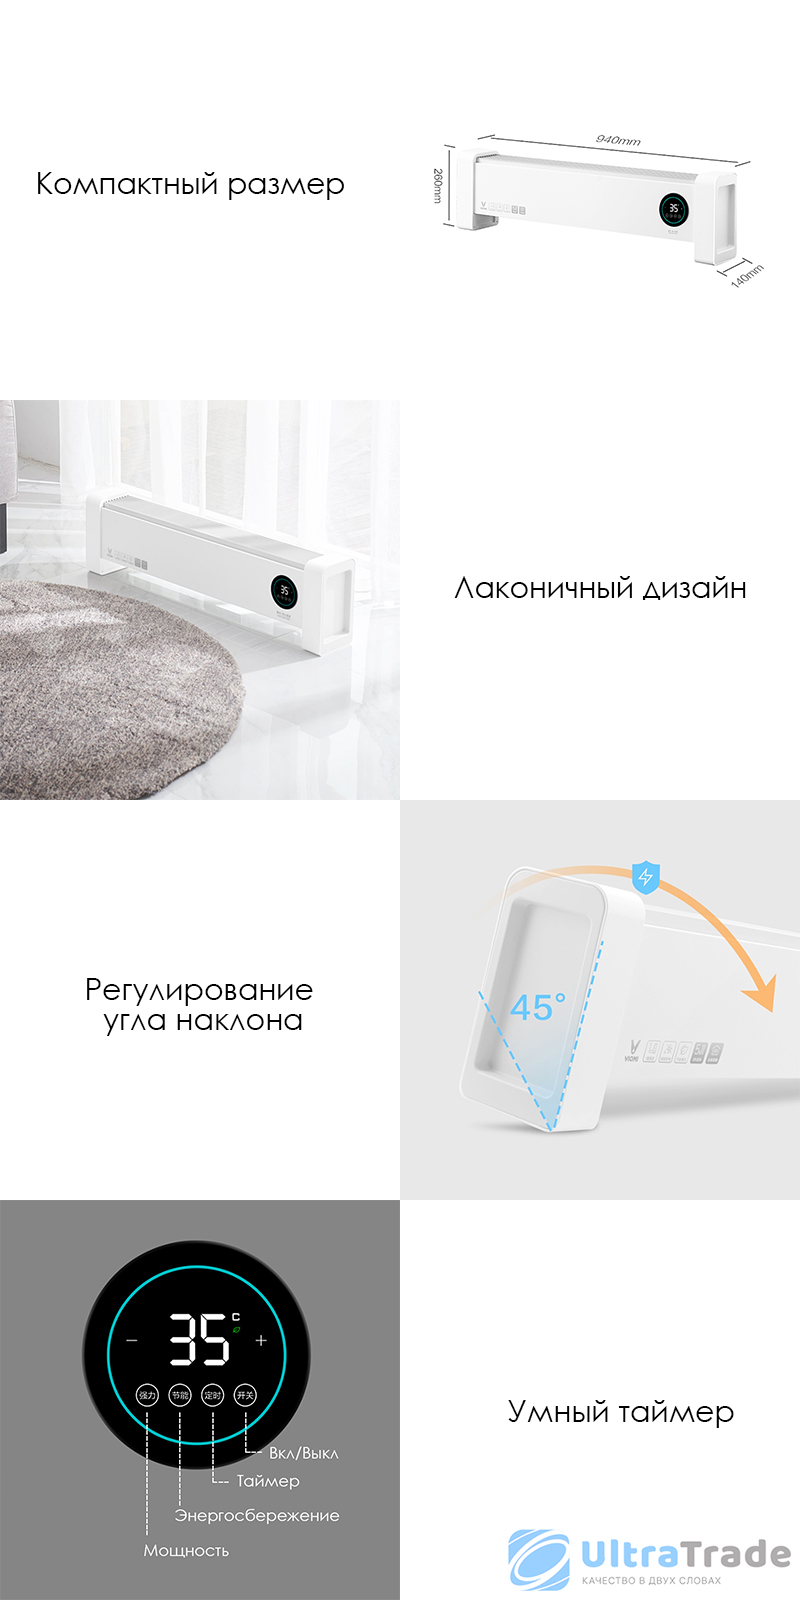 Умный электрический обогреватель Xiaomi Viomi Electric Home Heater (VXTJ02) White